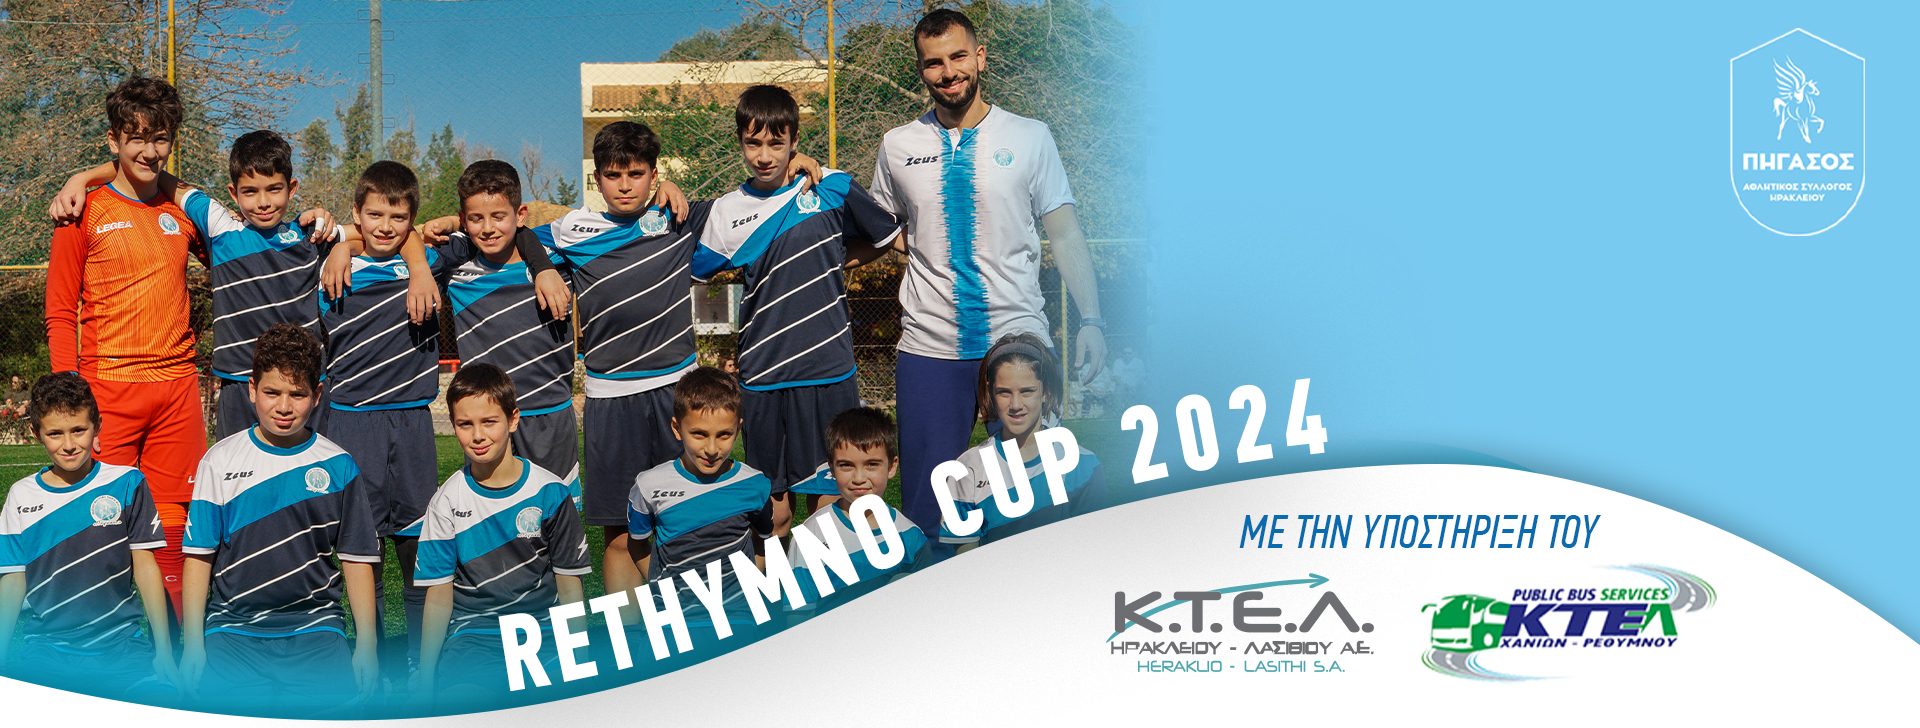 Rethymno Cup